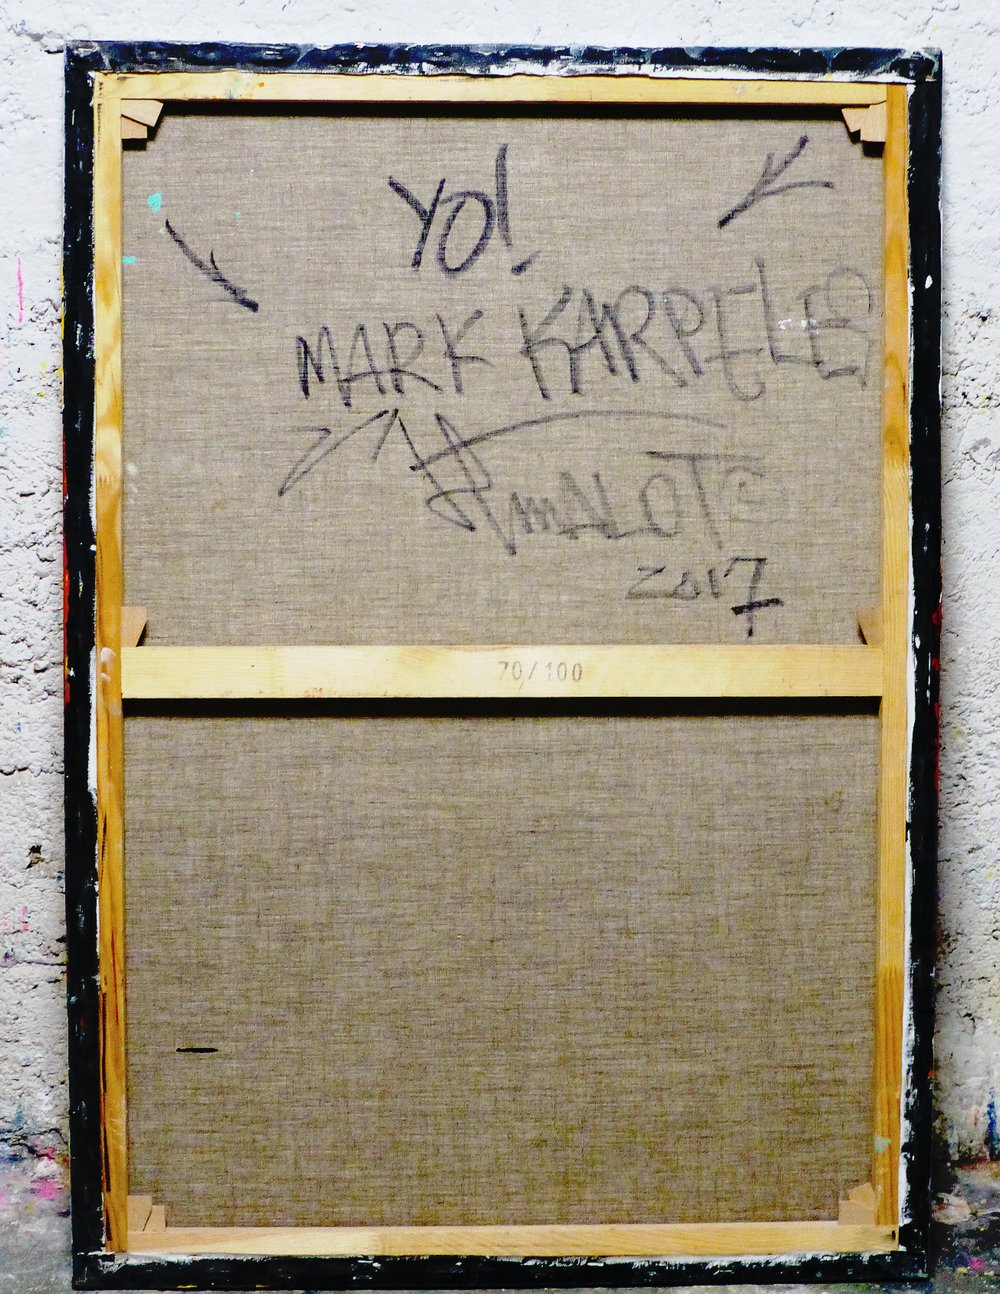 'YO!' MARK KARPELES! . JPMalot 2017.